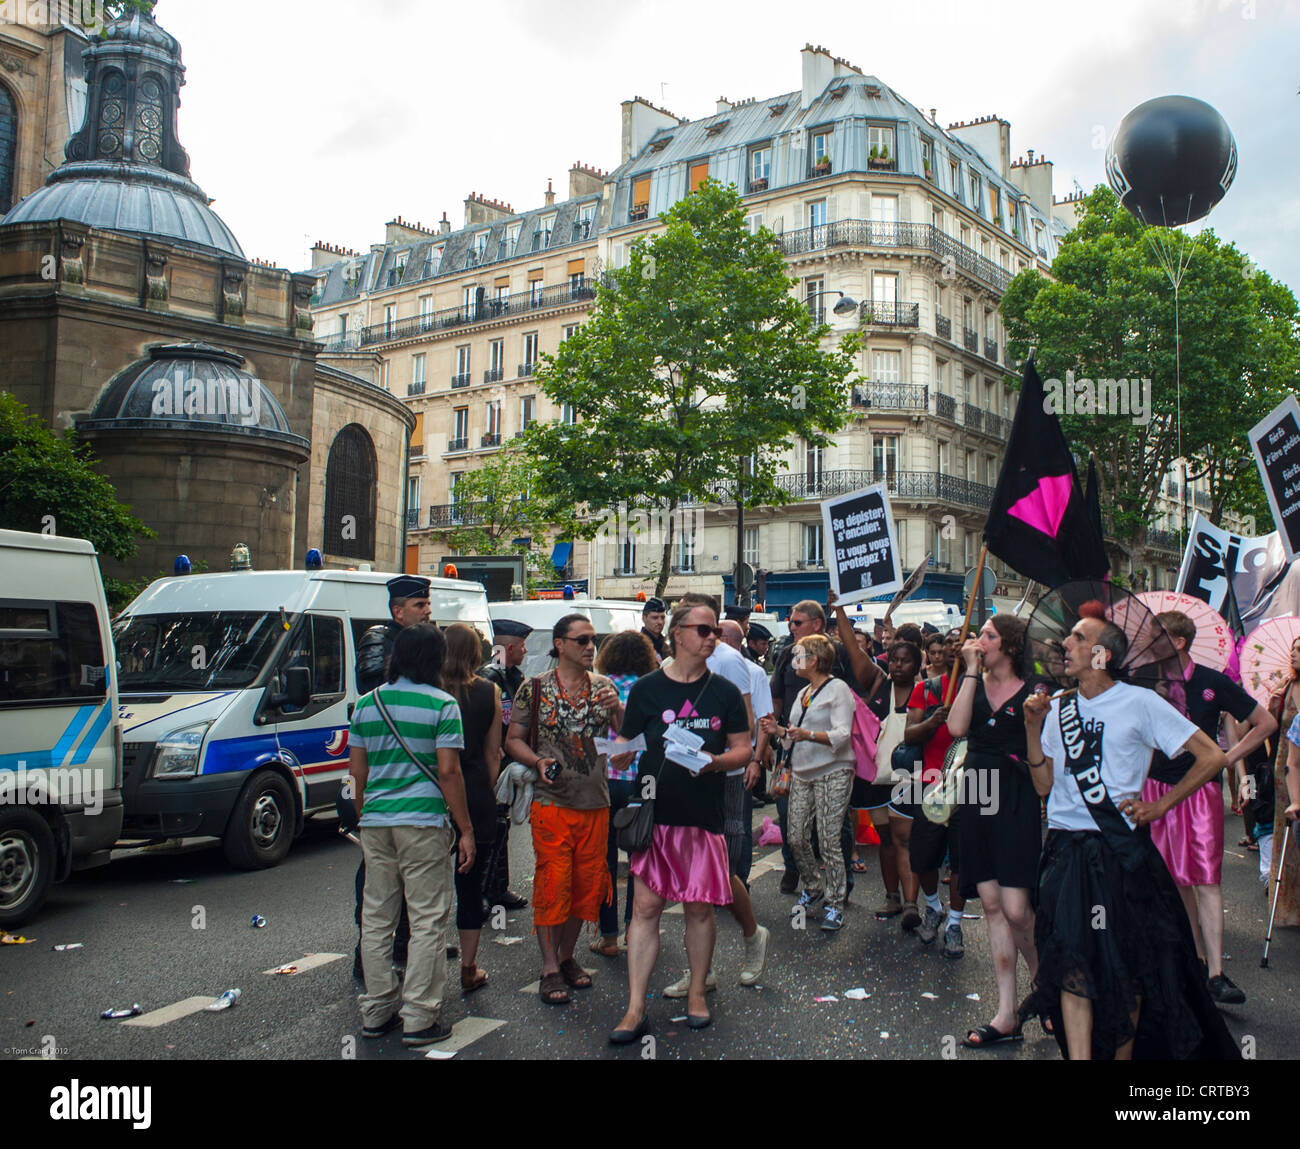 Parigi, Francia, Att Up Aids attivisti al di fuori della strada protestando contro anti anti-Gay Pride marzo, dimostrazione, al di fuori della Chiesa di San Nicola, (LGBT) lotta per i diritti dei gay, protesta contro l'AIDS Foto Stock